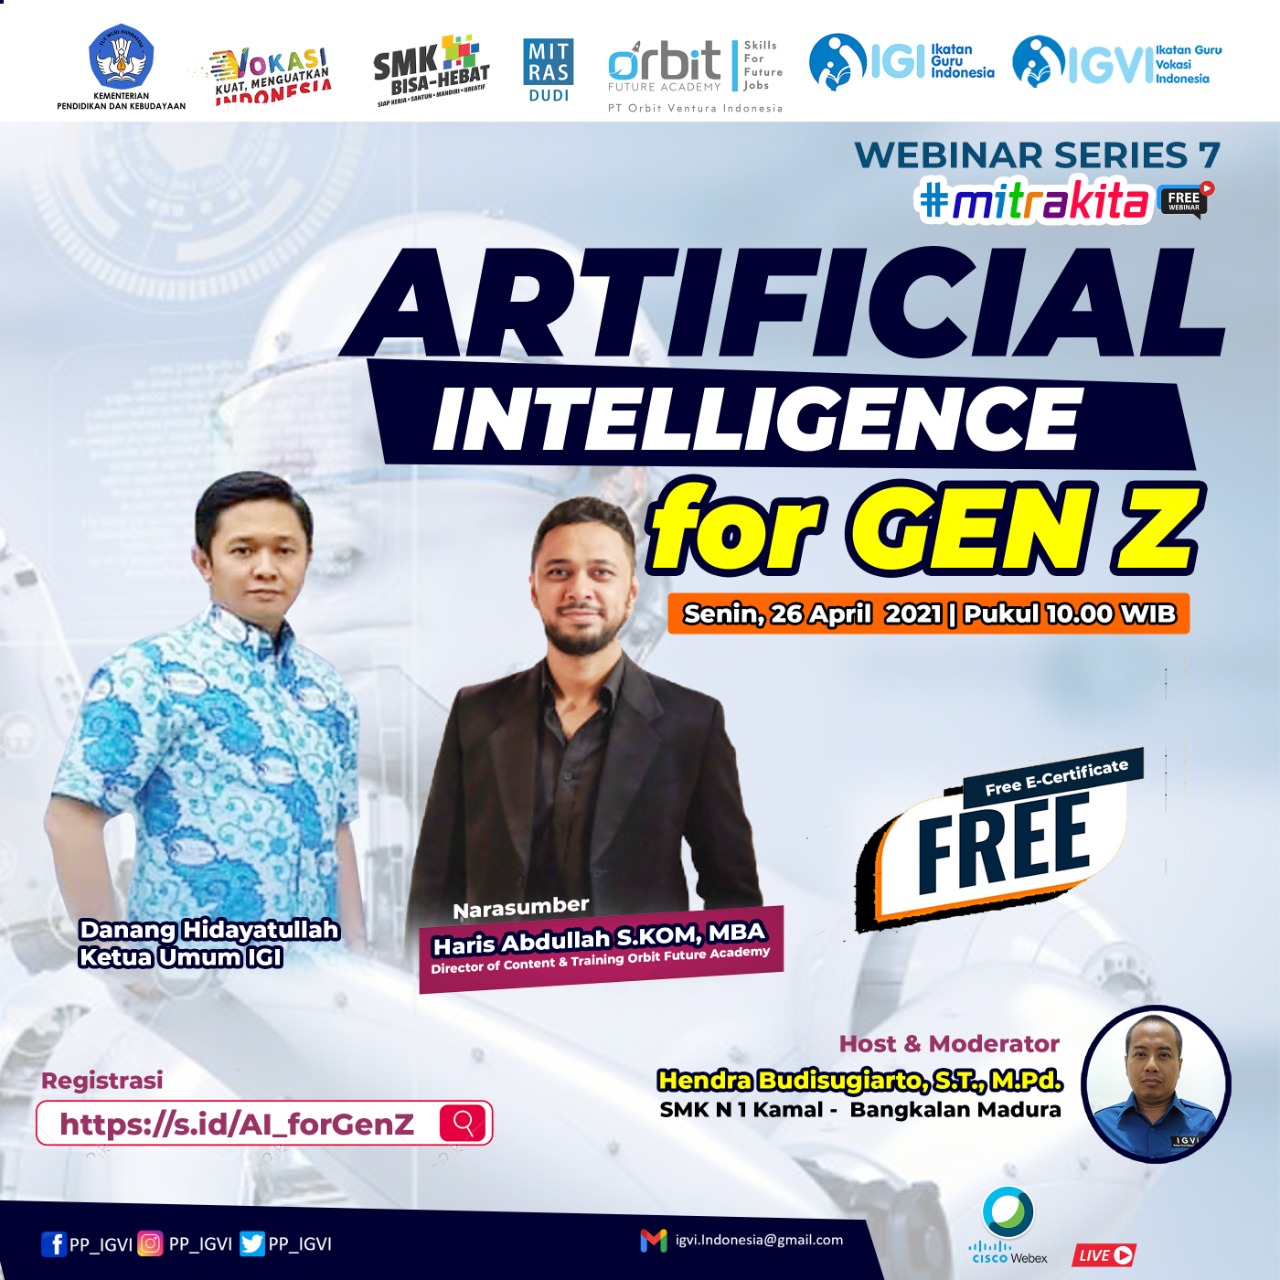 Artificial Intelligence for Gen Z WEBINAR SERIES 7